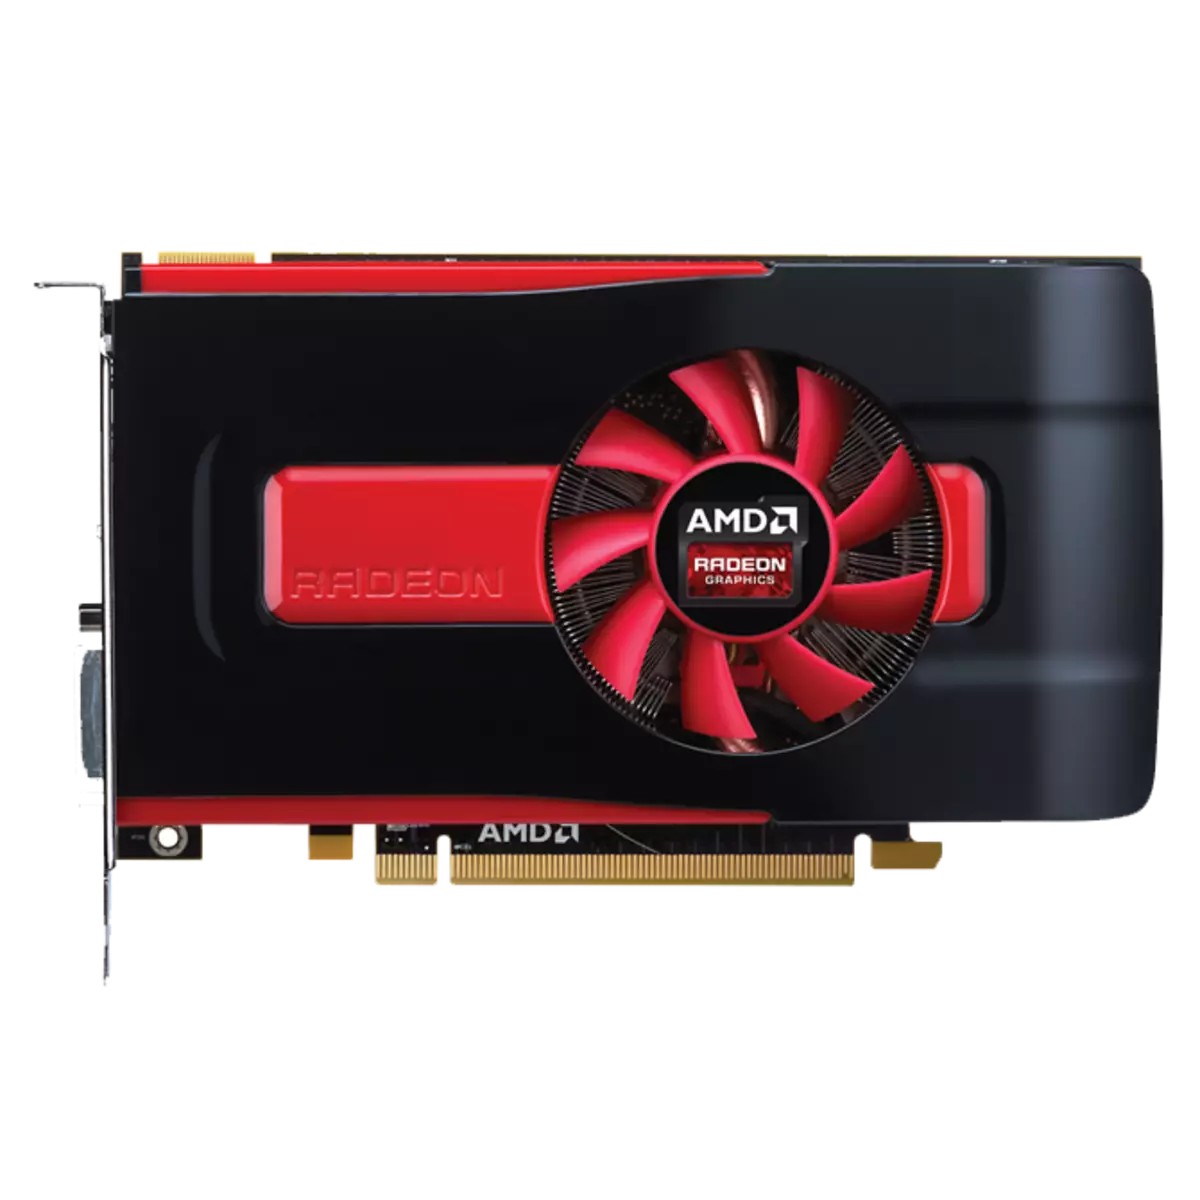 下載AMD Radeon HD 7700系列驅動程序